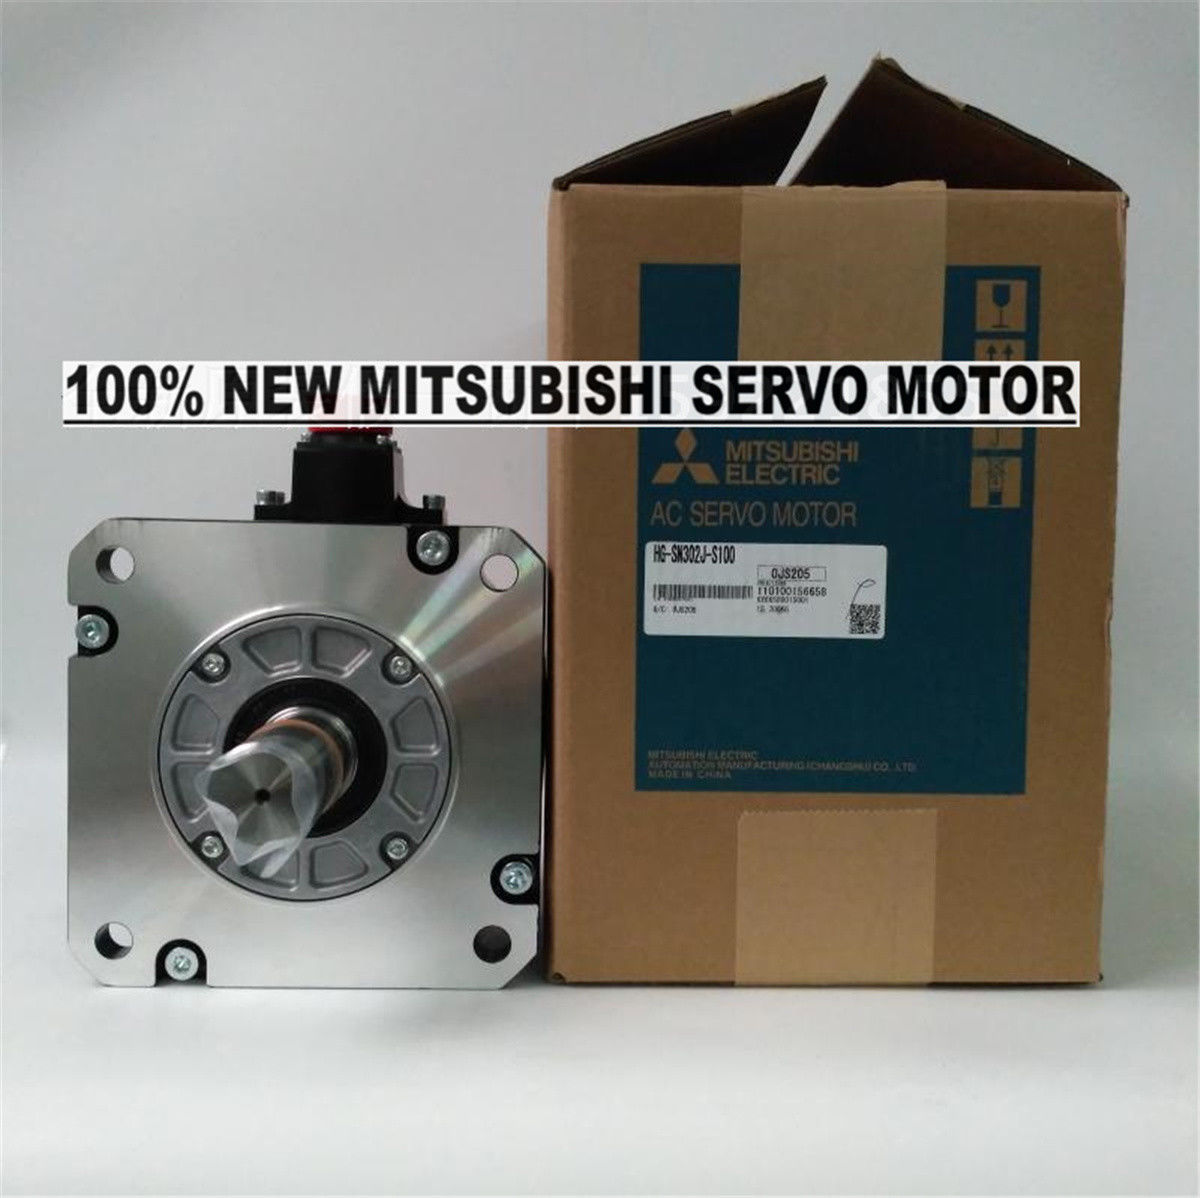 NEU Mitsubishi Servomotor HG-SN302J-S100 im Karton HGSN302JS100